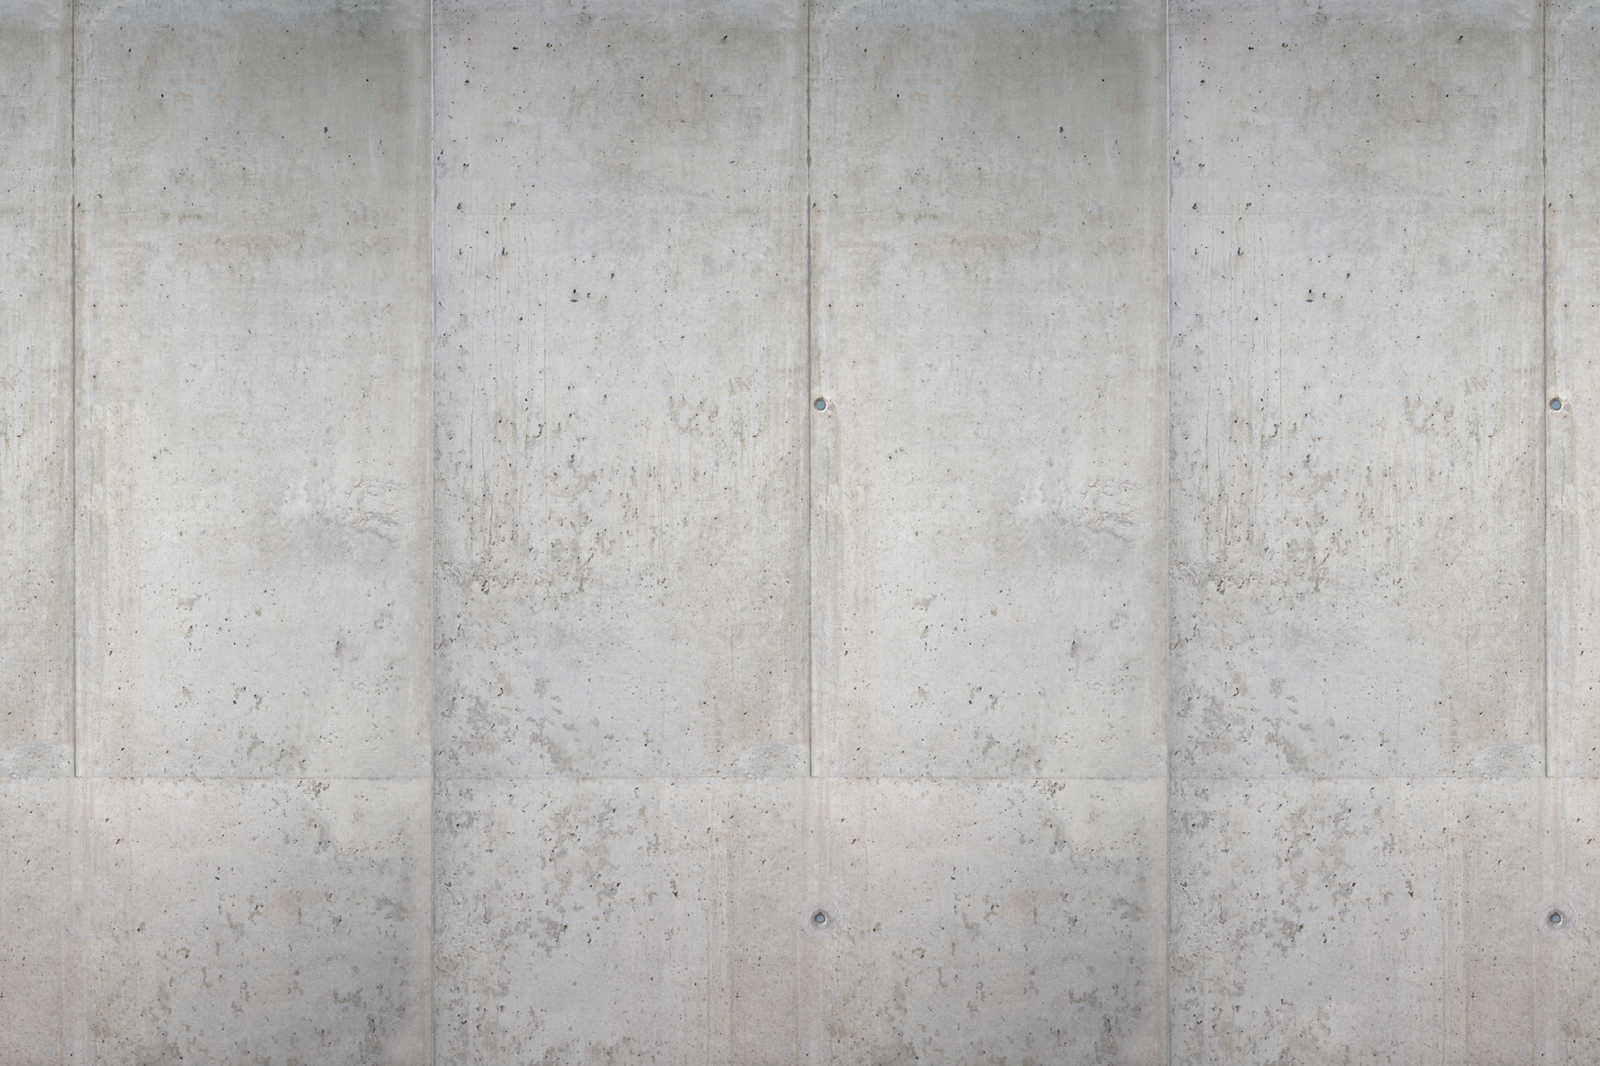             Beton Leinwandbild Sichtbeton Wand im Industrial Stil – 1,20 m x 0,80 m
        